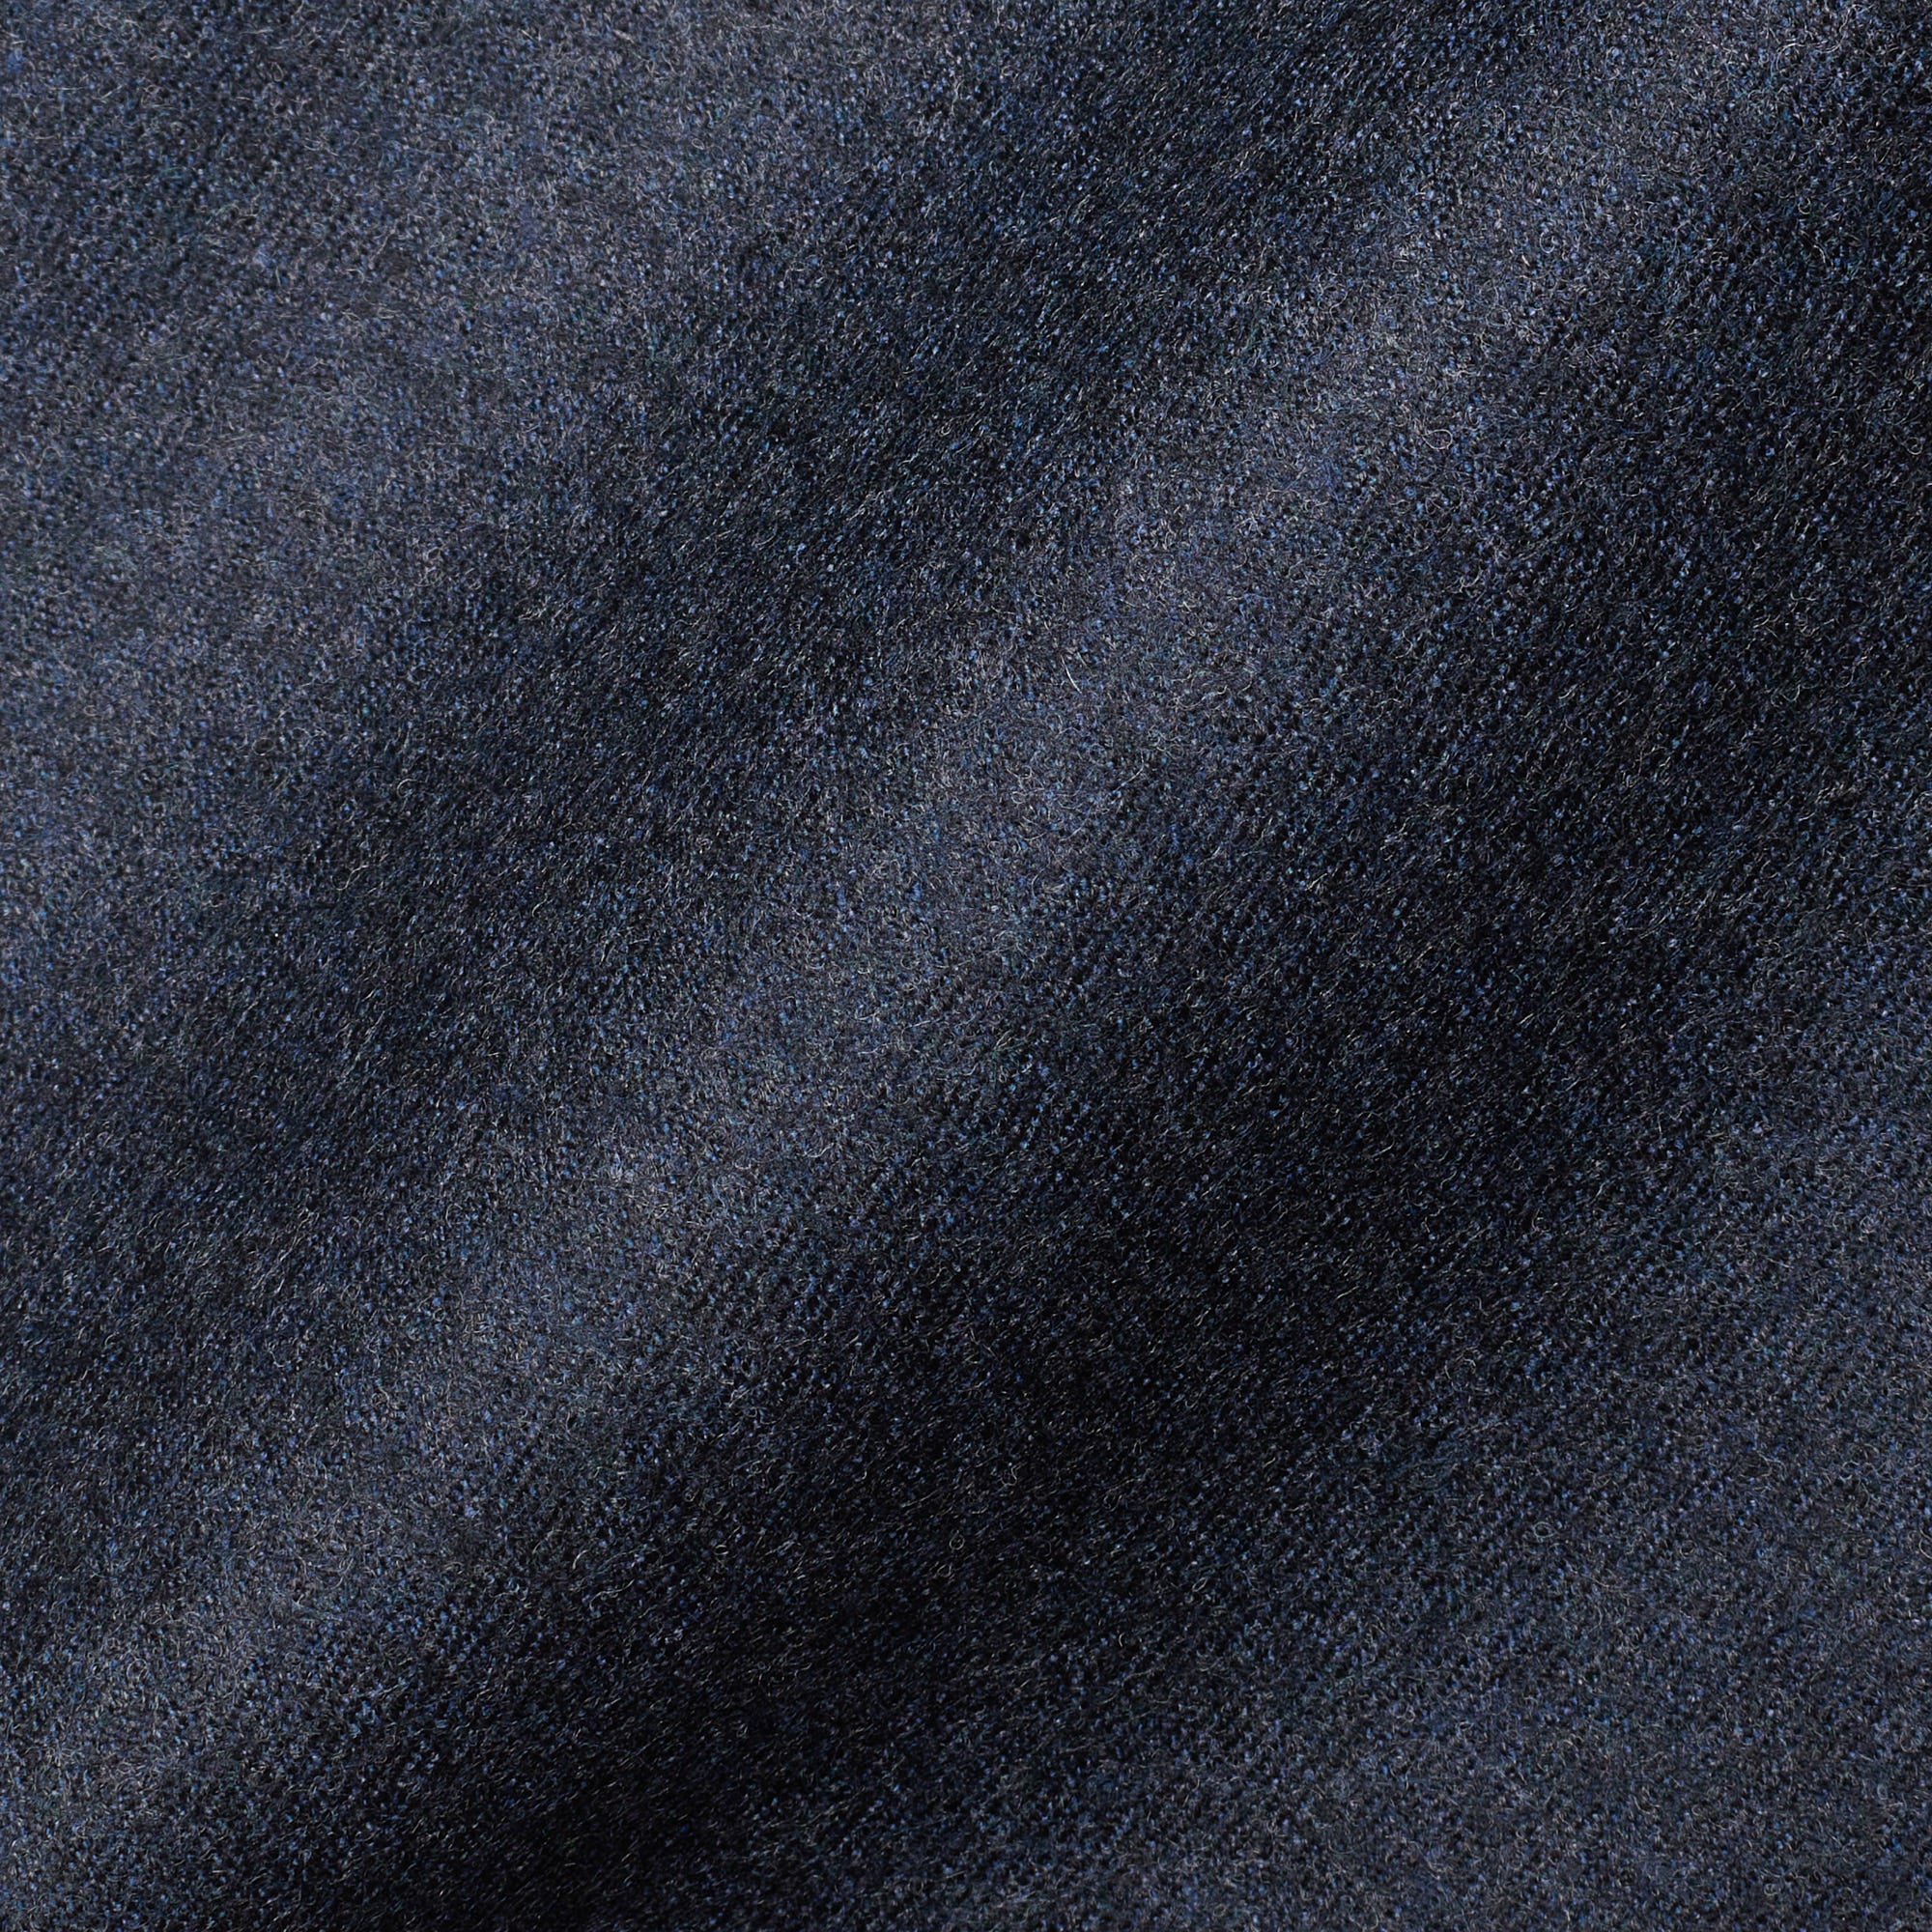 INCOTEX (Slowear) Grayish Blue Flannel Wool Flat Front Dress Pants 52 NEW US 36 Slim Fit INCOTEX